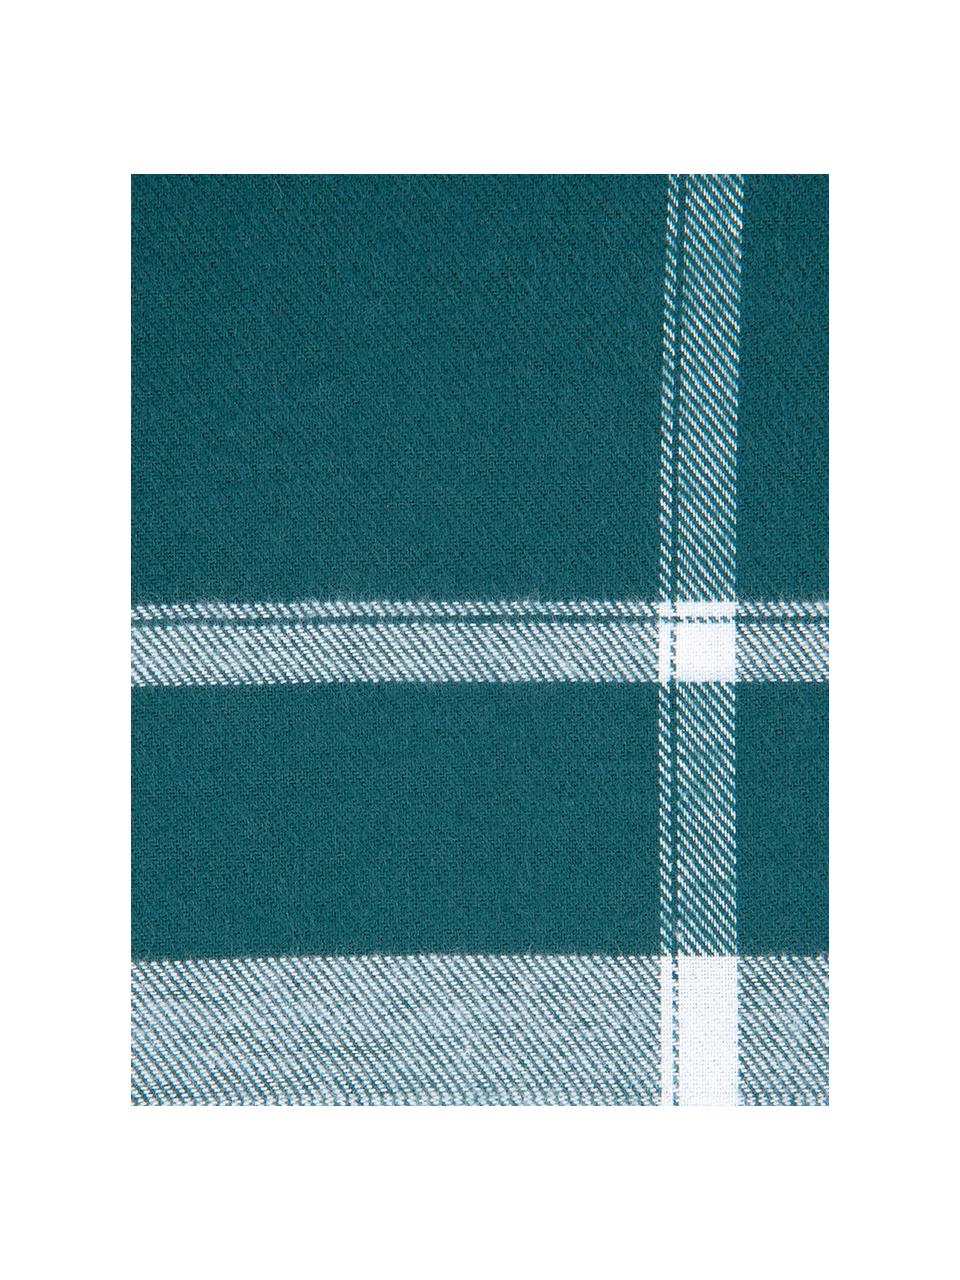 Flanell-Kissenbezüge Rolf, kariert, 2 Stück, Webart: Flanell Flanell ist ein k, Grün, 40 x 80 cm